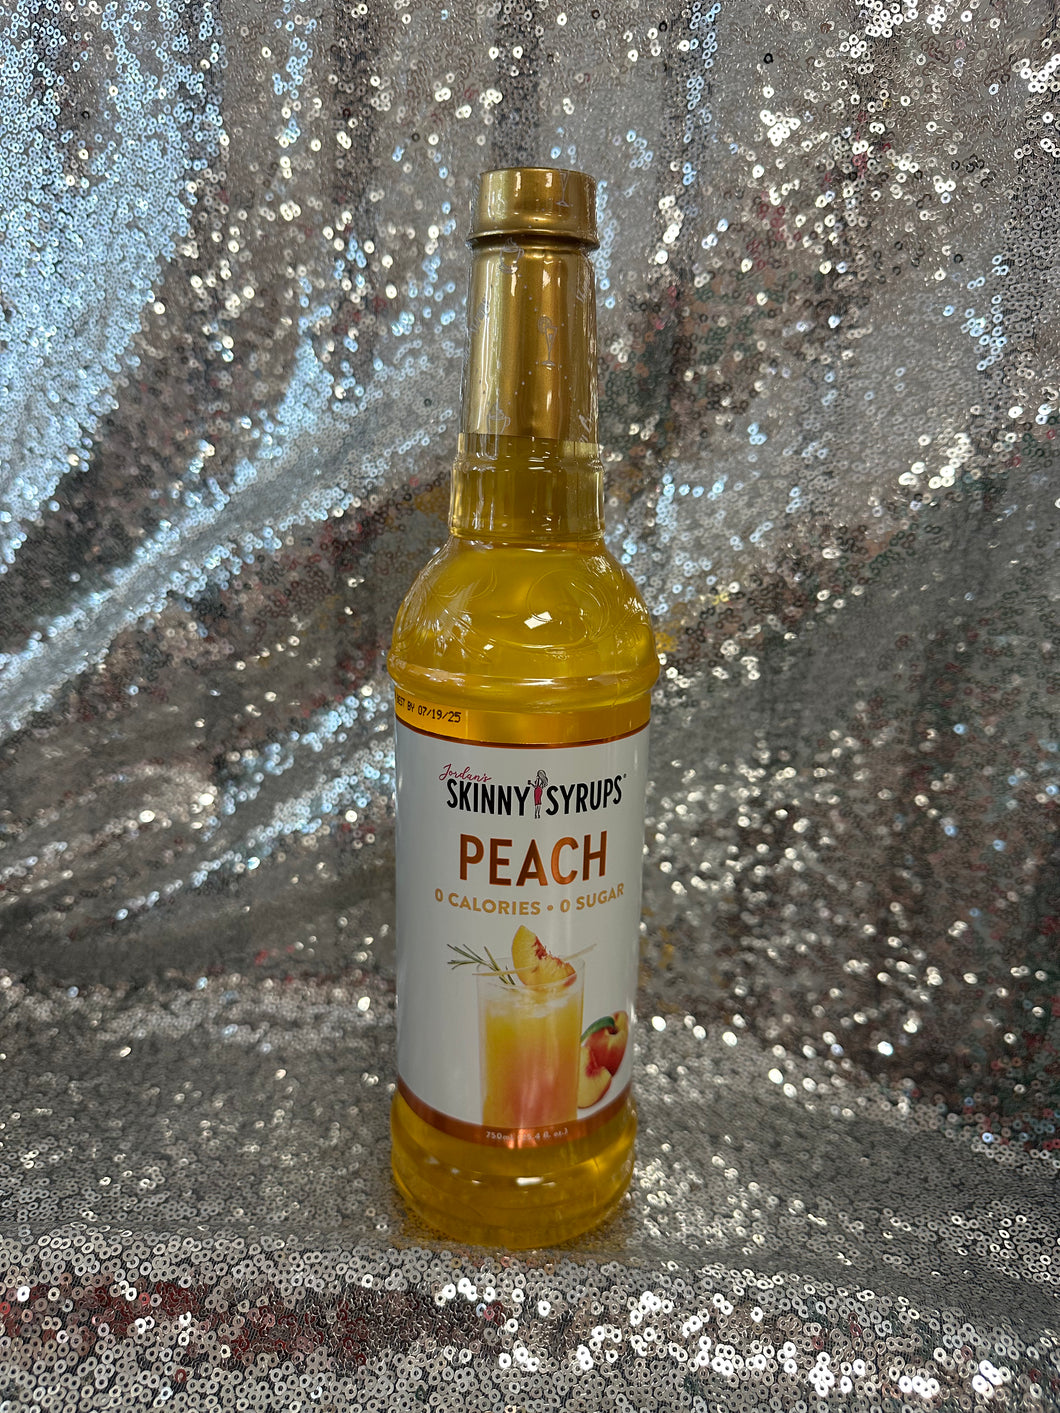 Peach skinny syrup